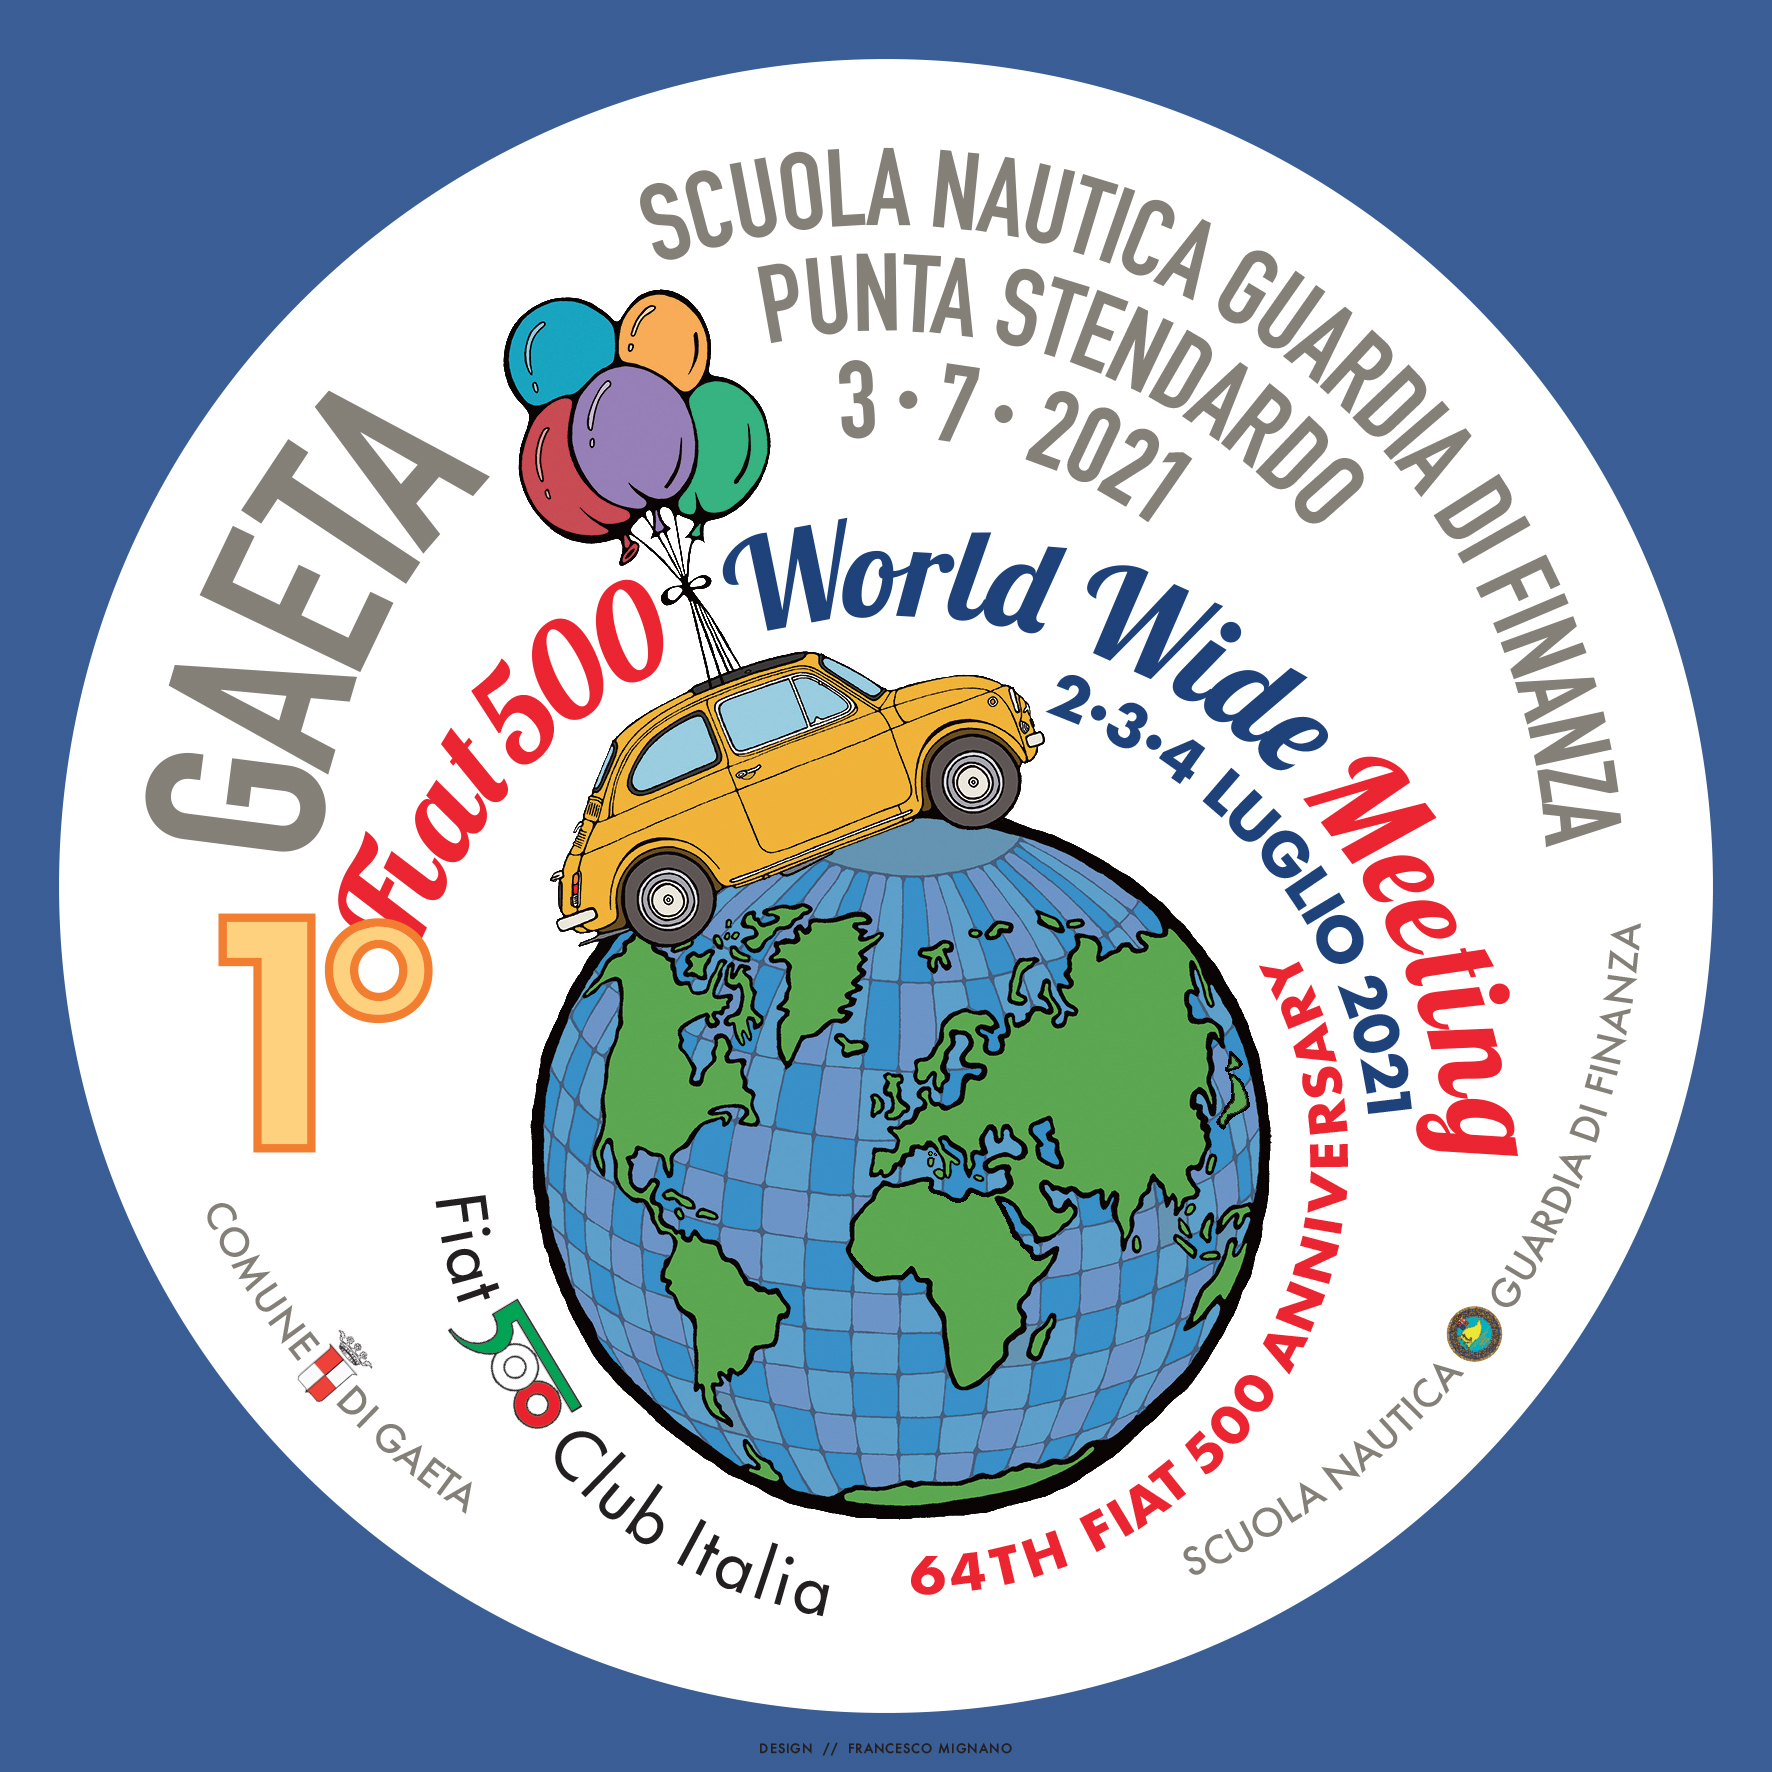 Arriva a Gaeta il Primo Fiat 500 World Wide Meeting, il raduno mondiale “diffuso” che celebra il simbolo italiano su quattro ruote.